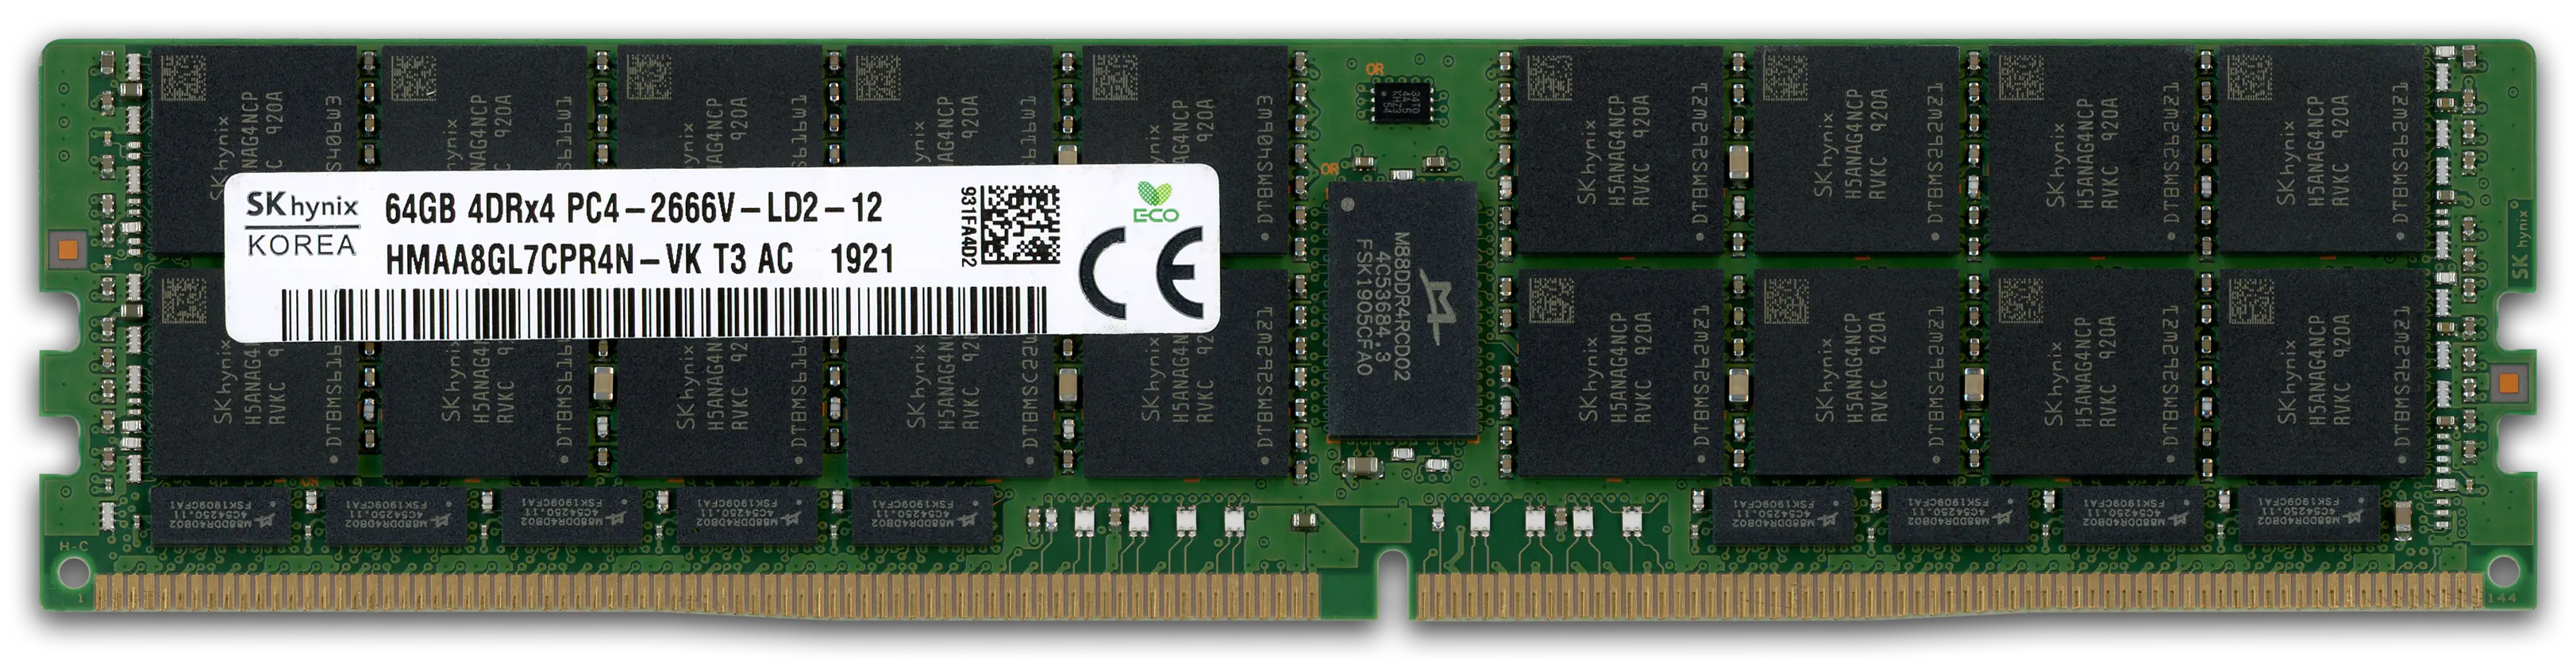 Hynix 64GB RAM-Modul DDR4 2666 MT/s PC4-2666V-L LRDIMM ECC